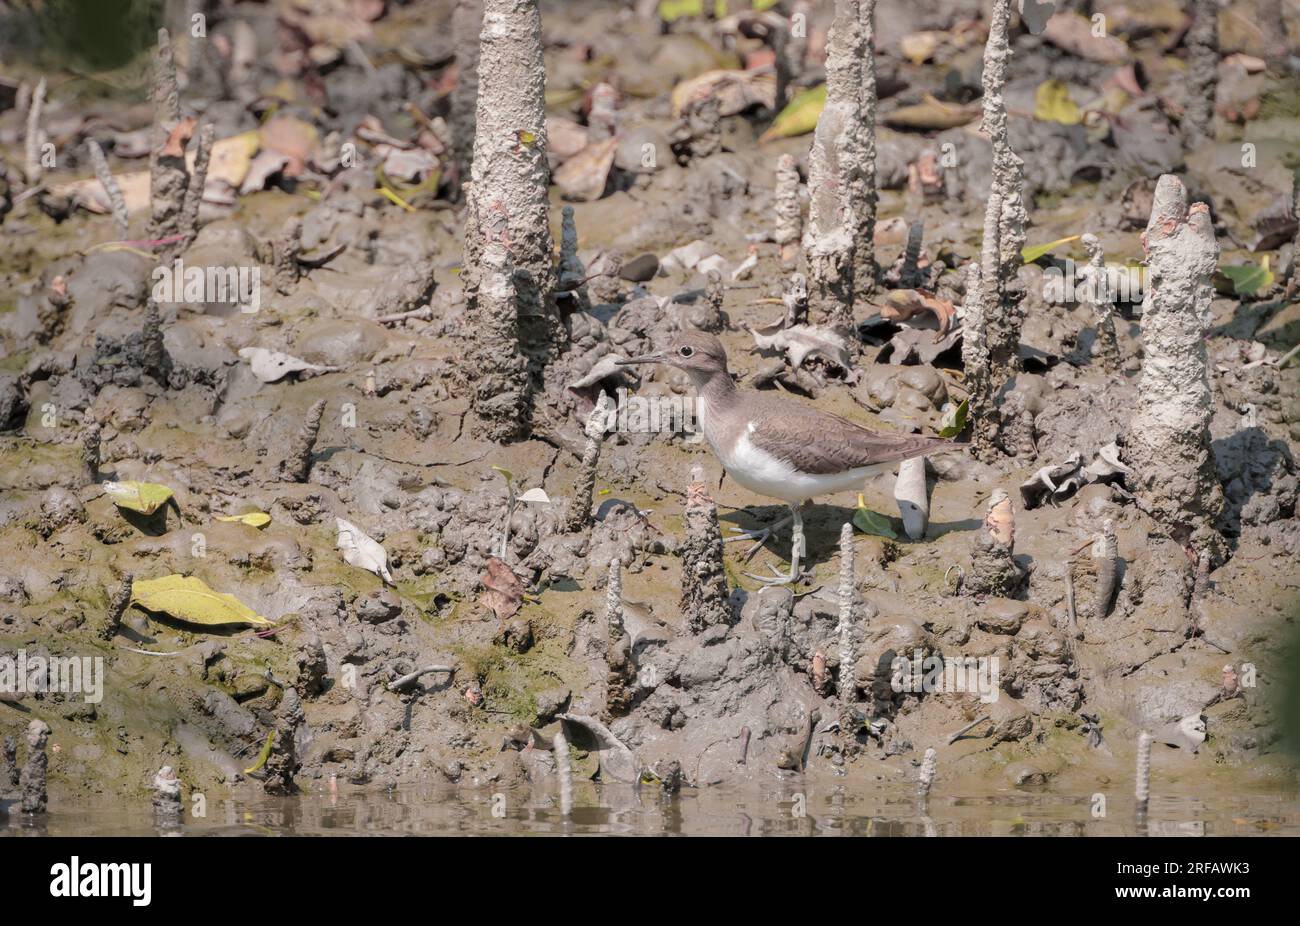 Vögel von sundarbans (gewöhnlicher Sandpiper). Sundarbans Mangrovenwald ist ein großartiges Tierschutzgebiet. Stockfoto